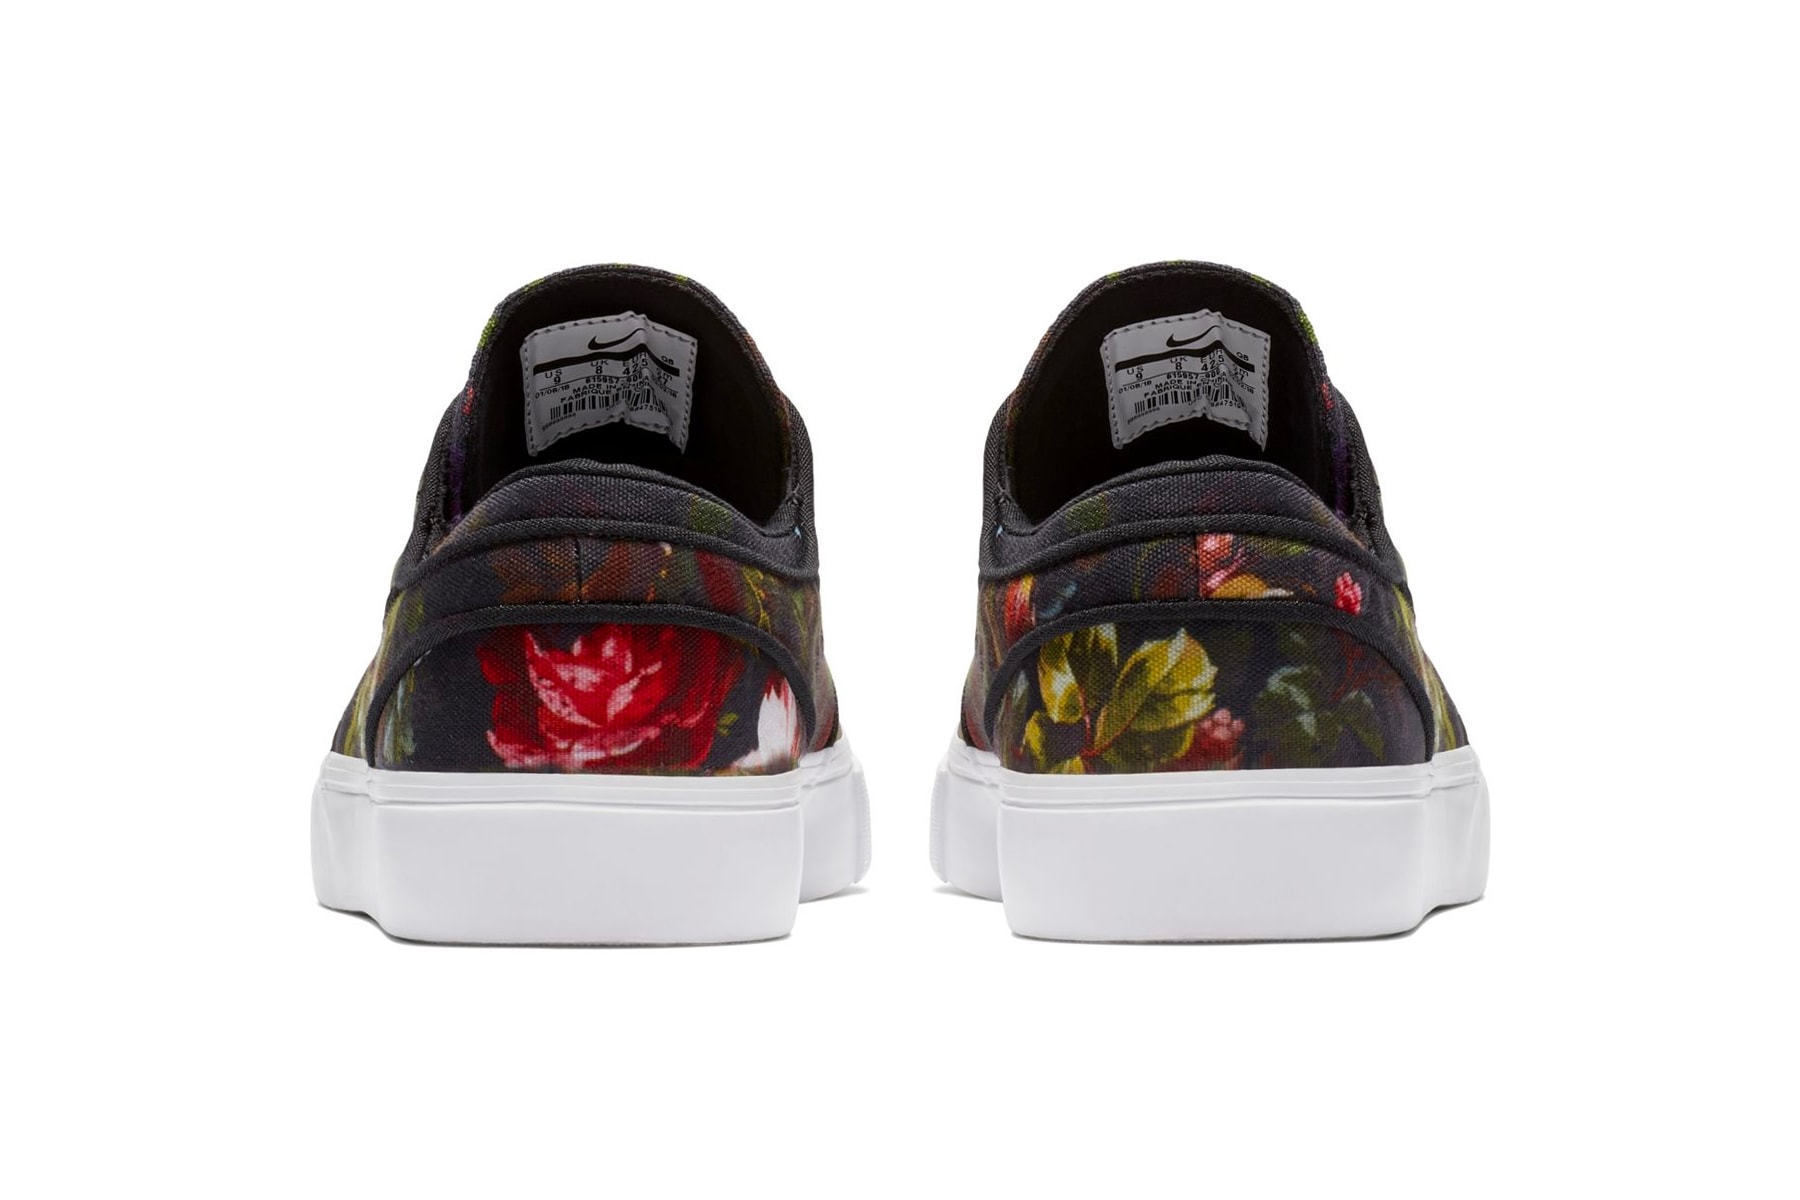 Nike SB Zoom Stefan Janoski Floral Canvas Release Date sneaker price skateboarding